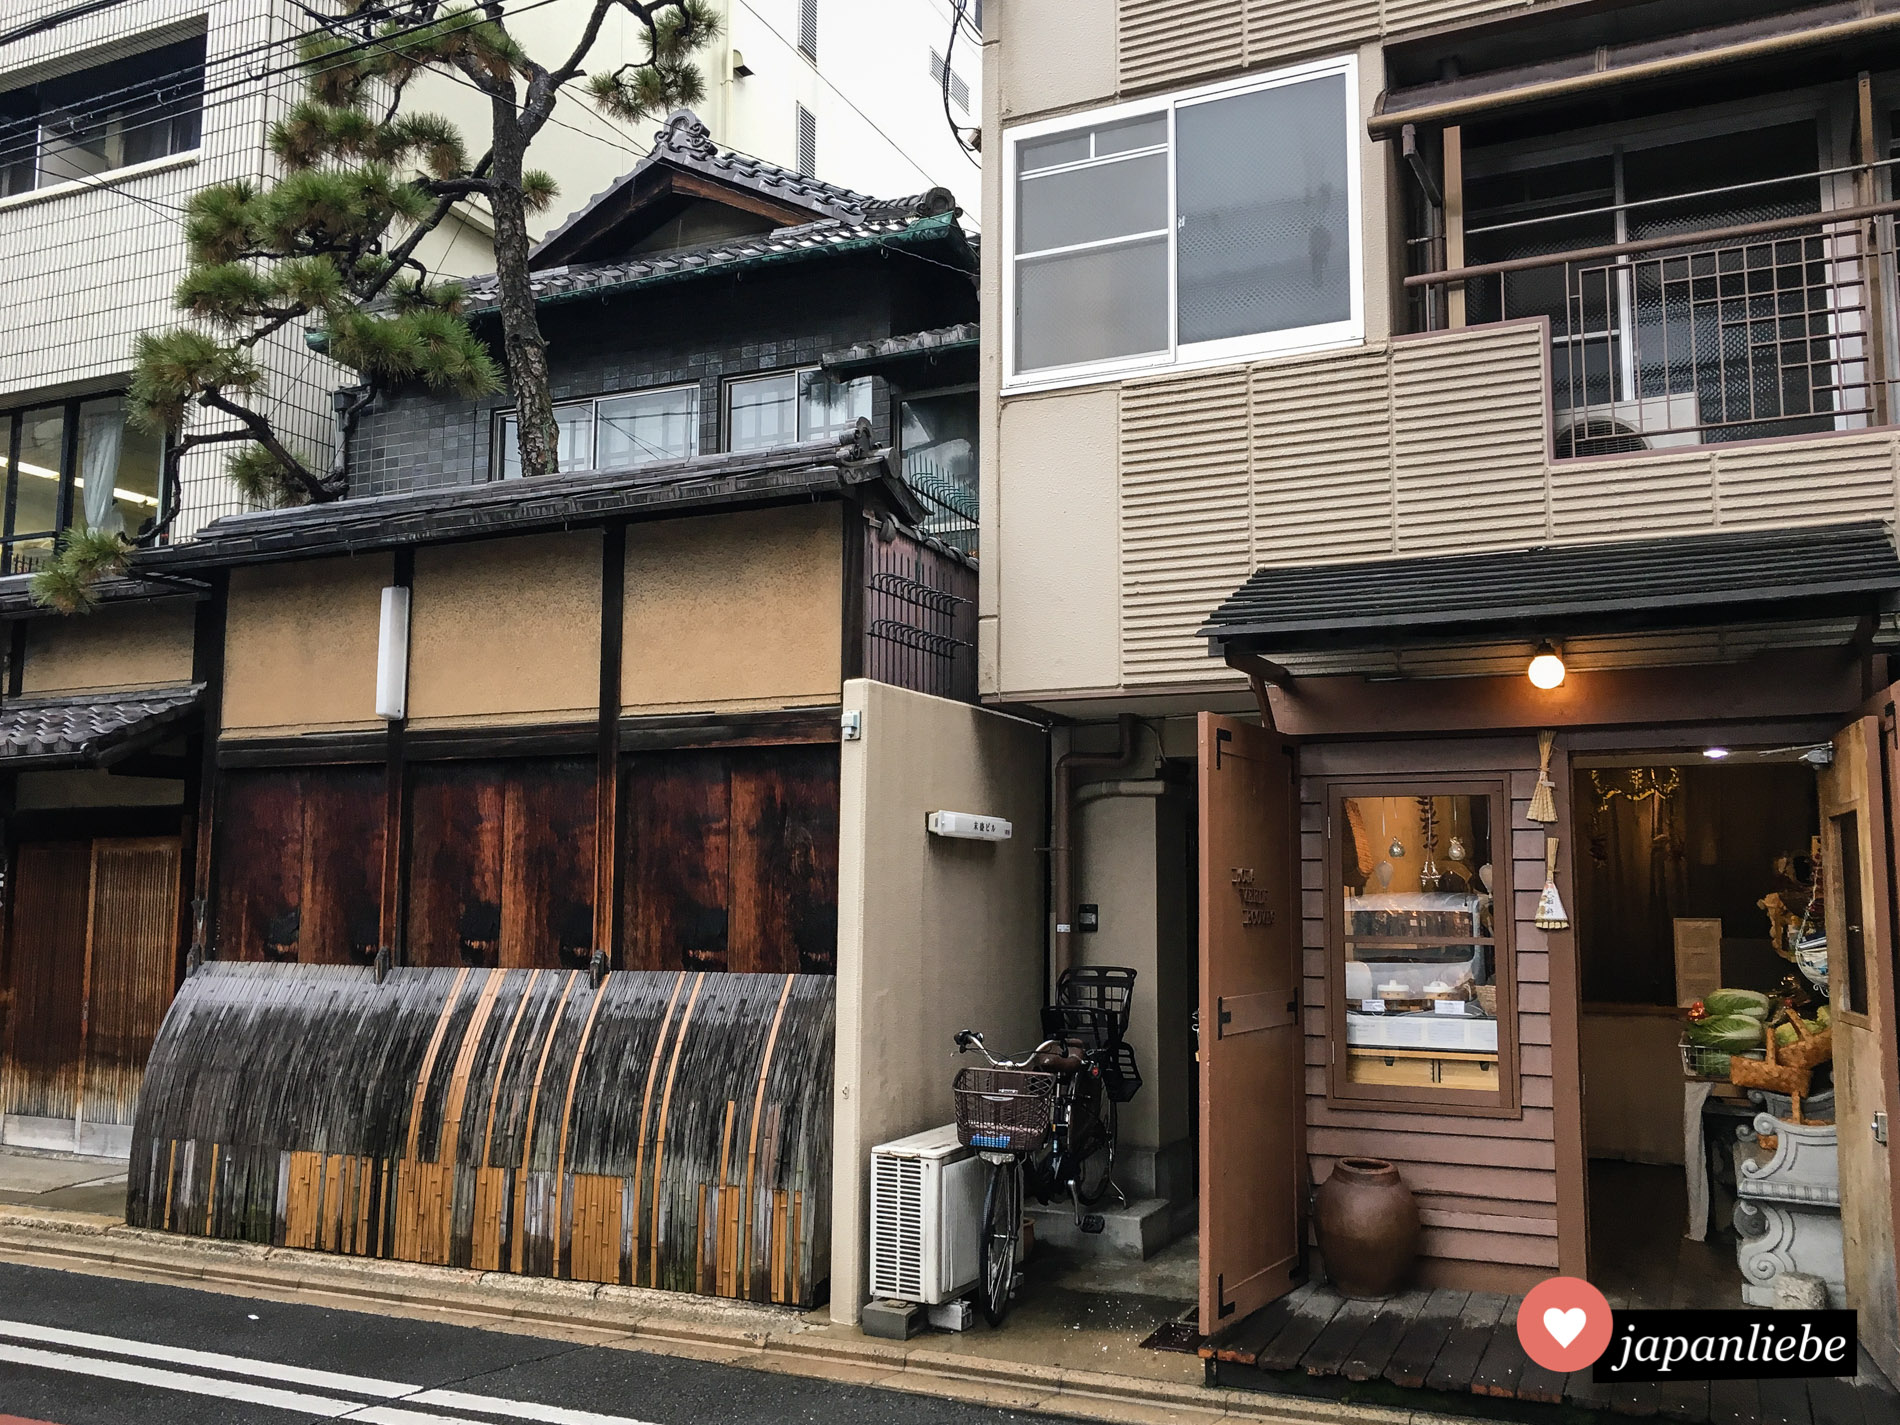 Traditionelle neben moderner Architektur ist in Kyōto keine Seltenheit.